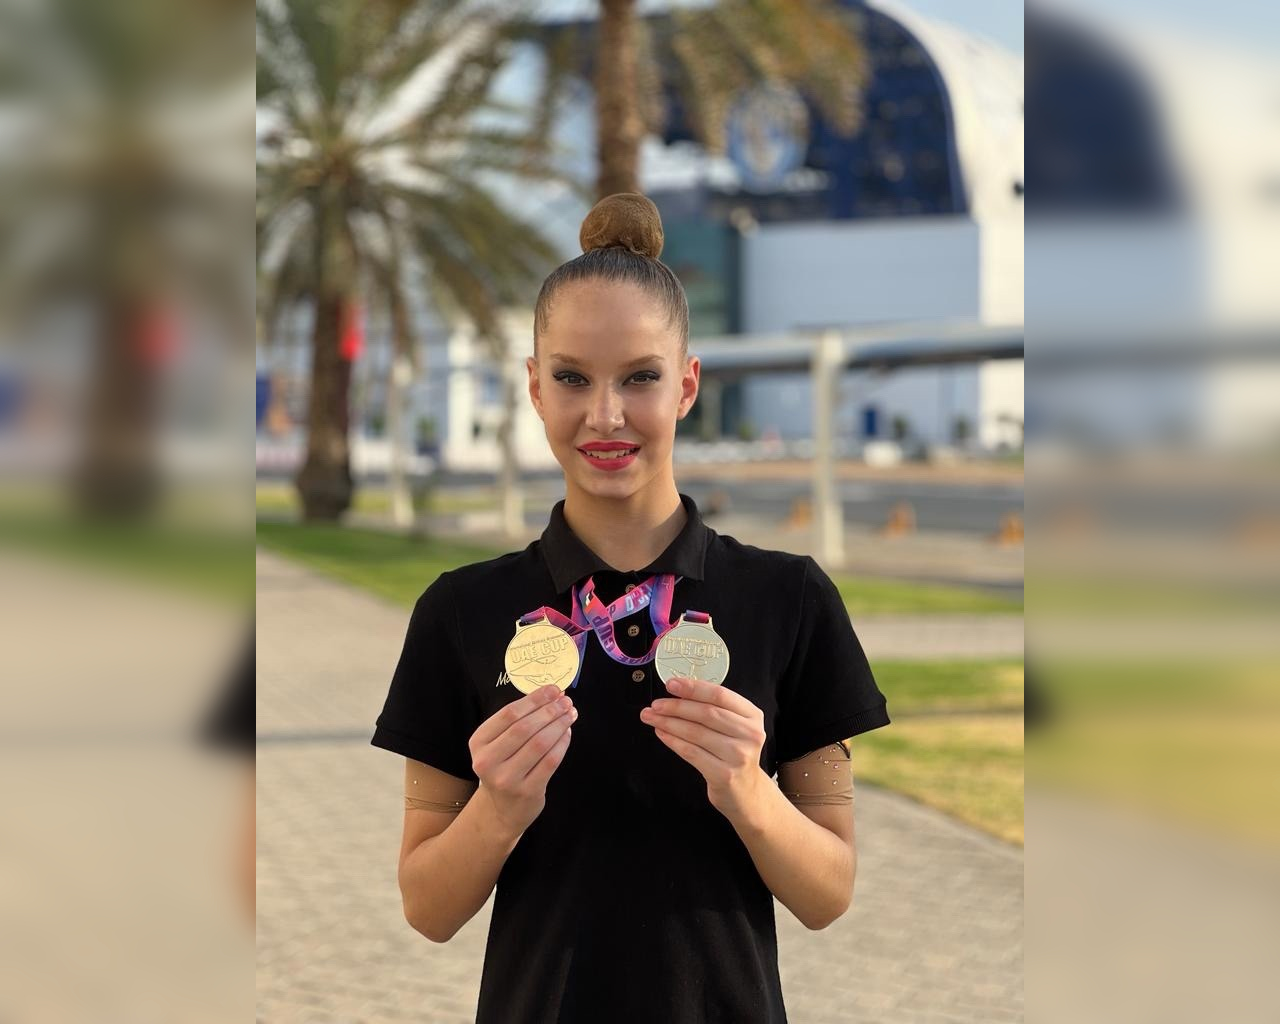 Милана Волошина из Моршанска отличилась на крупных соревнованиях по гимнастике